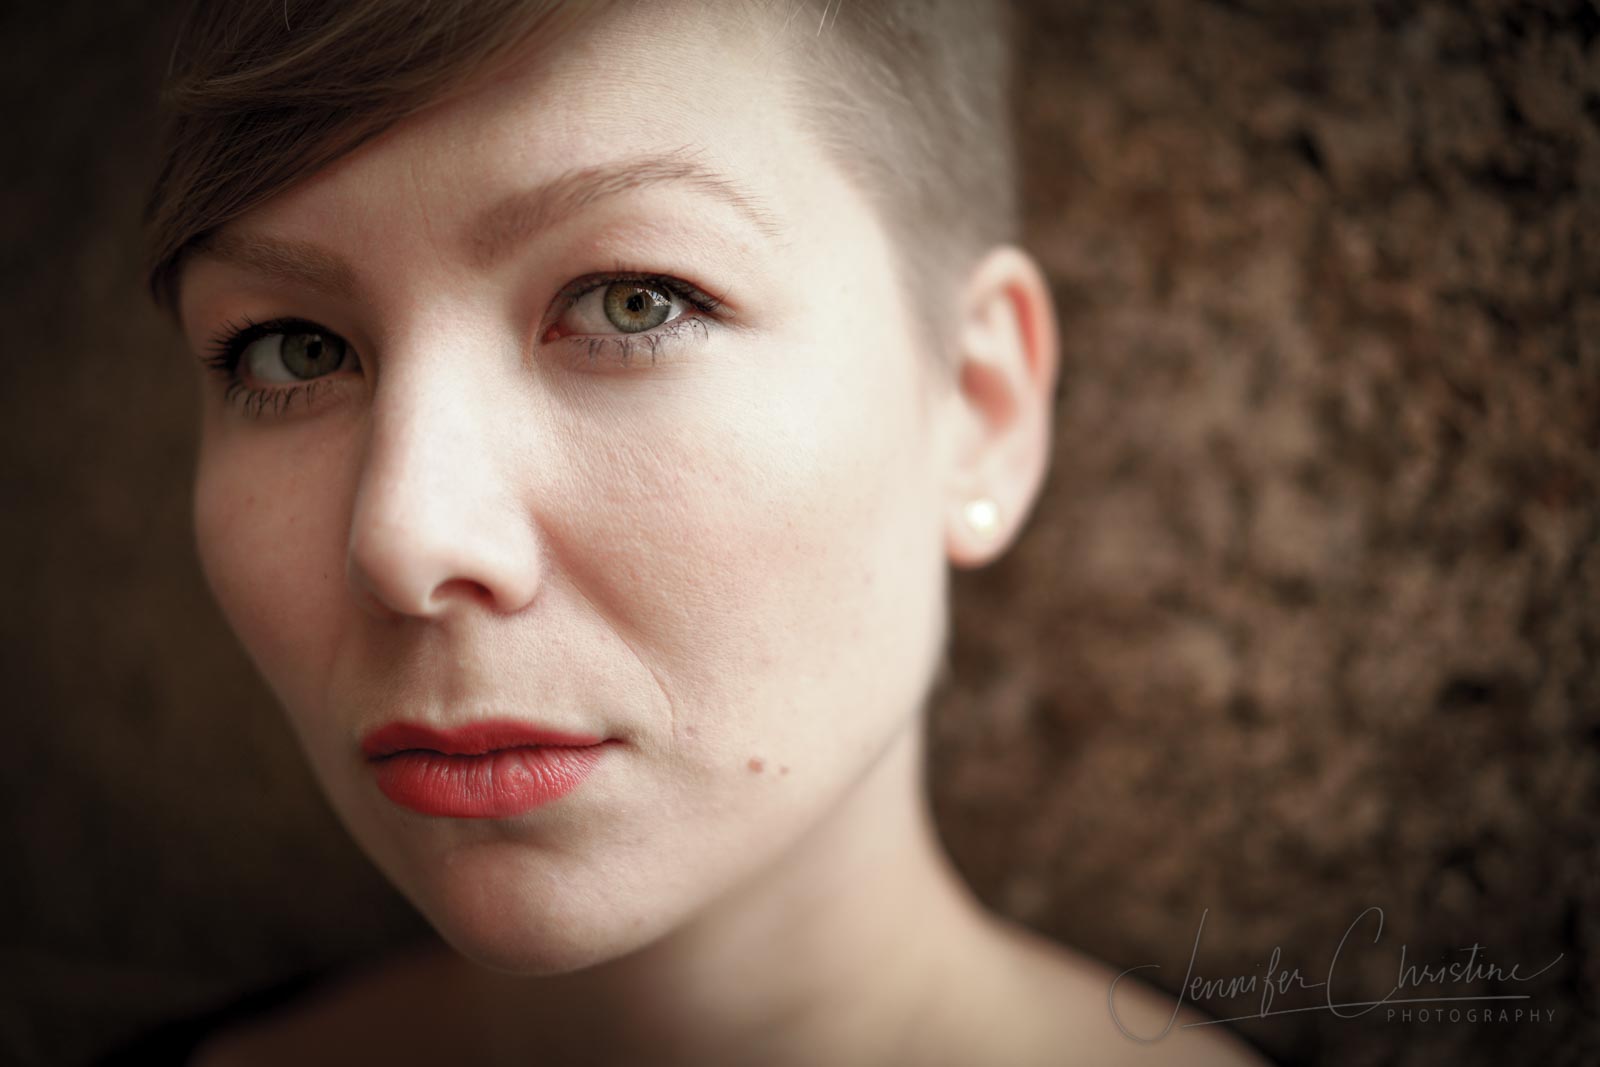 Portraitfoto erstellt von Jennifer Christine Photography